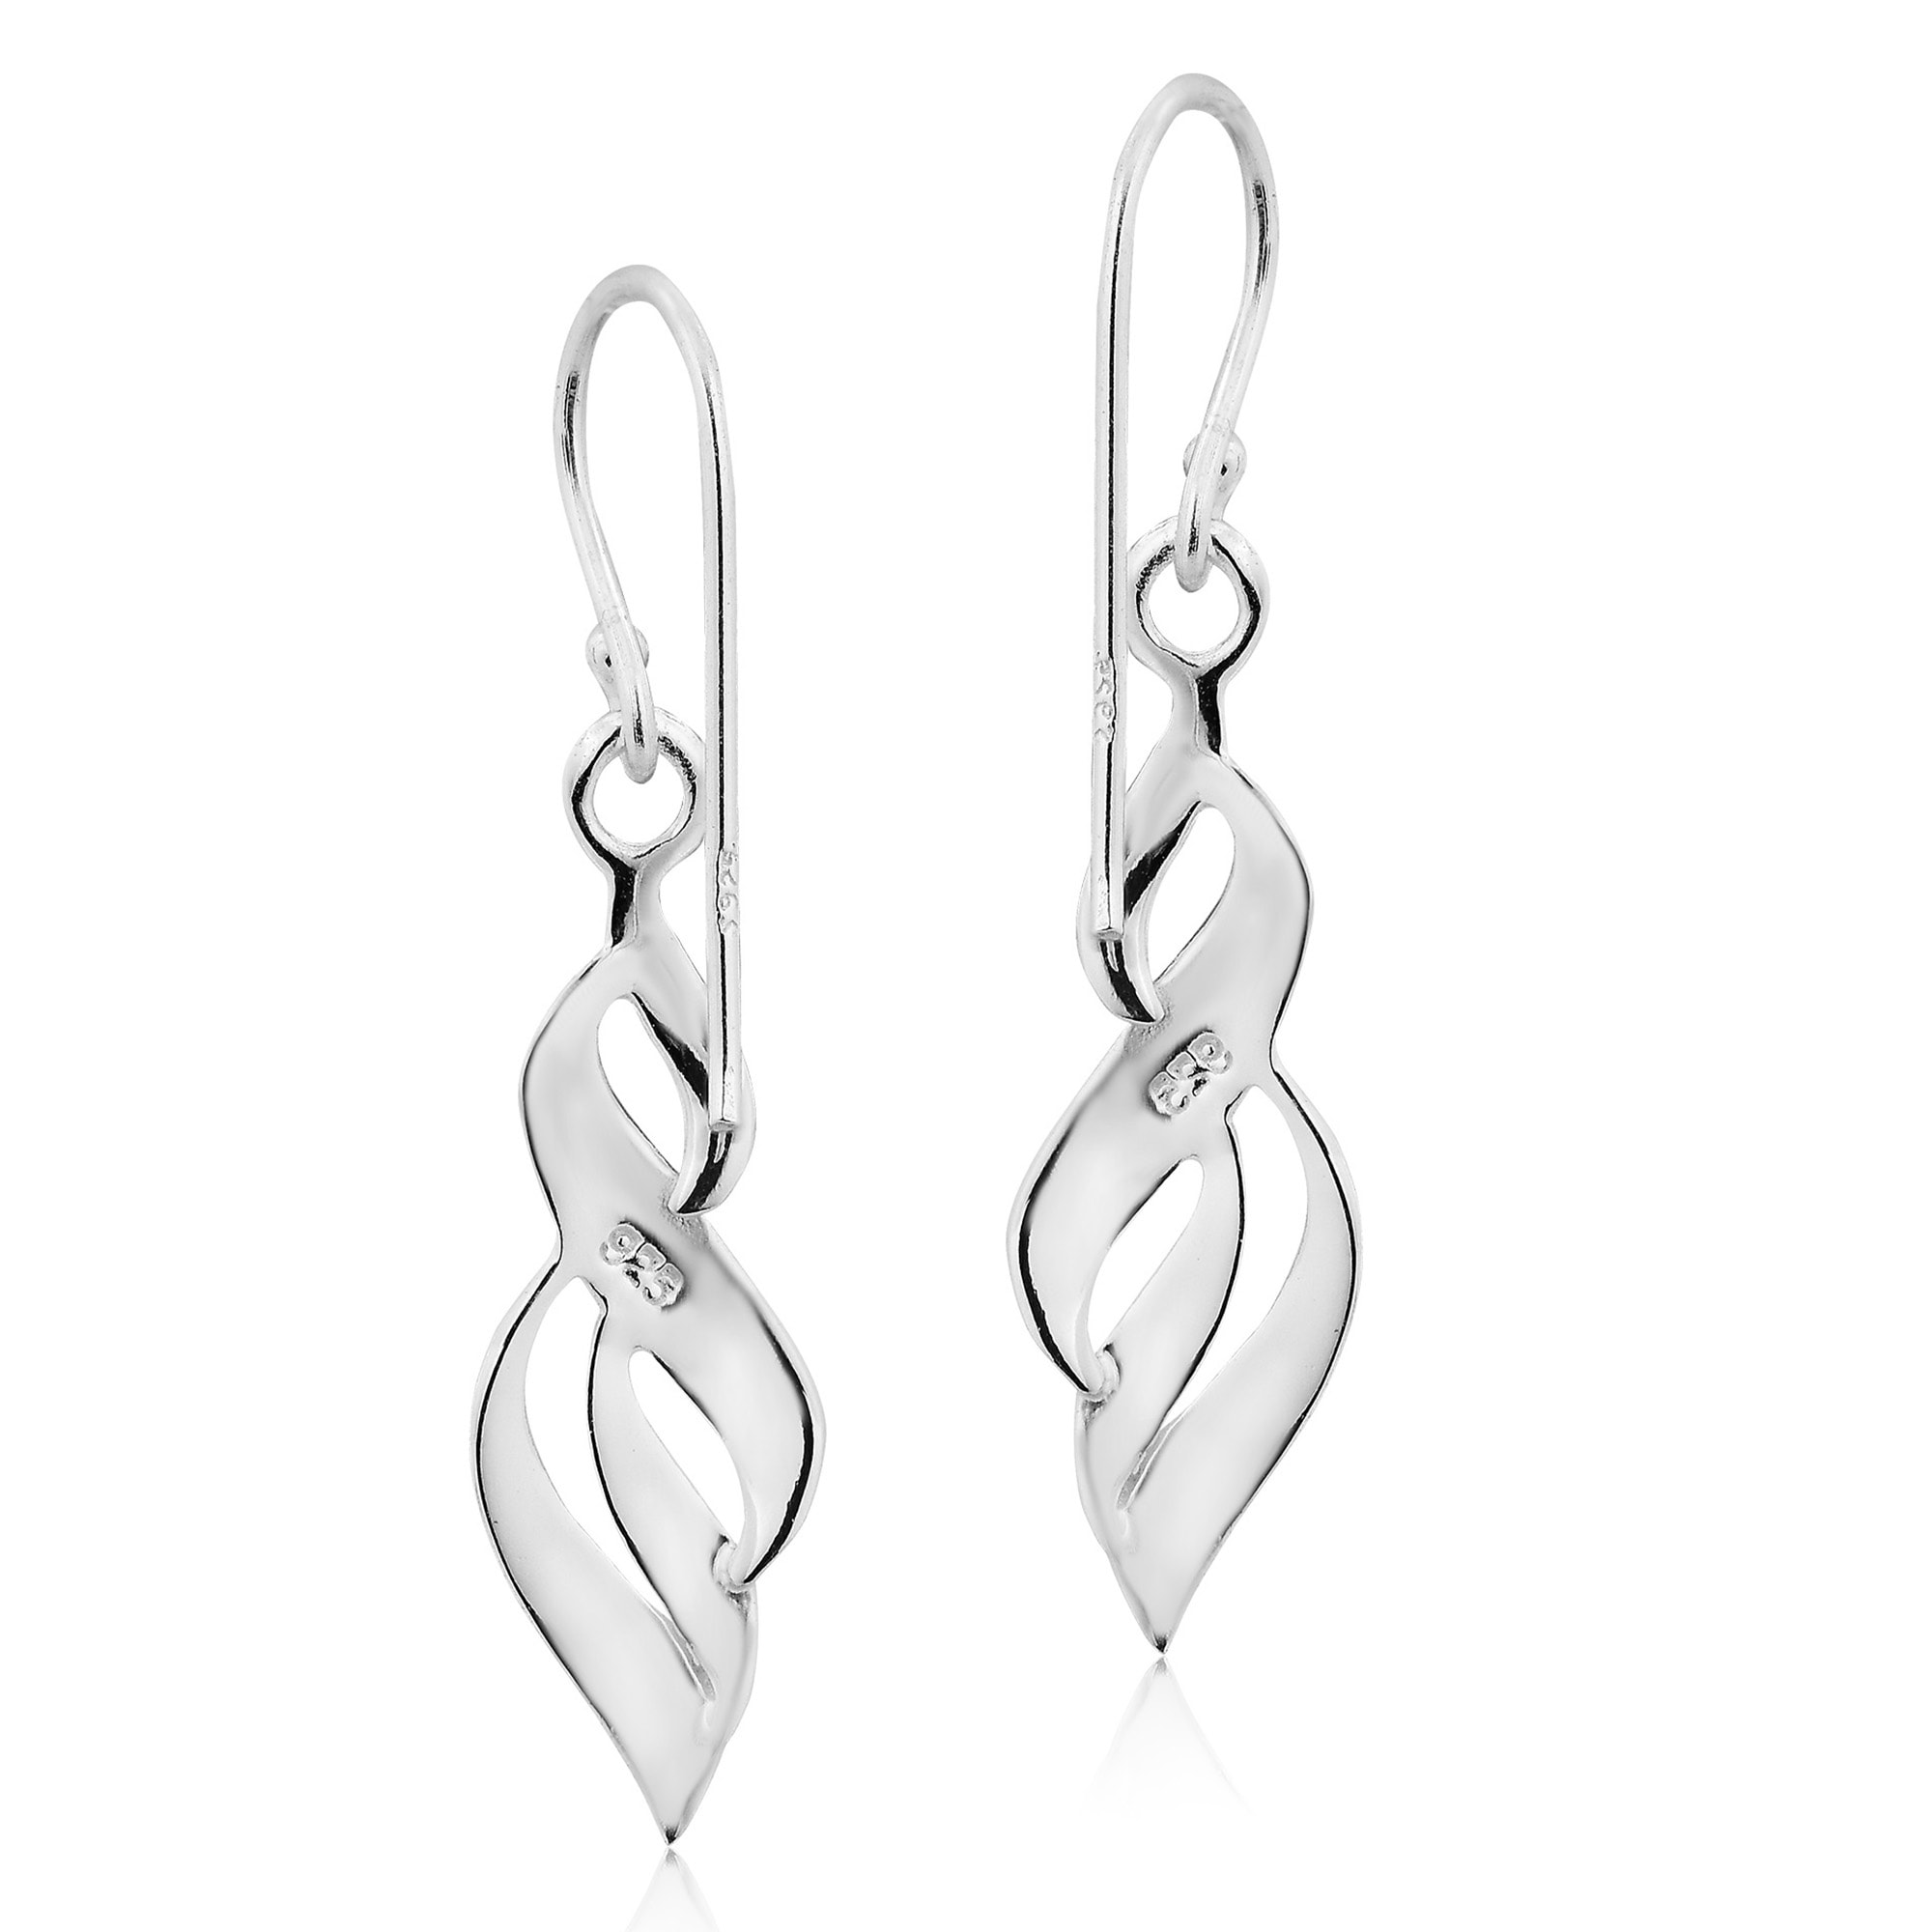 dangle 13 earring designs Interchangeable dressy Silver Sterling Twist Earrings Set